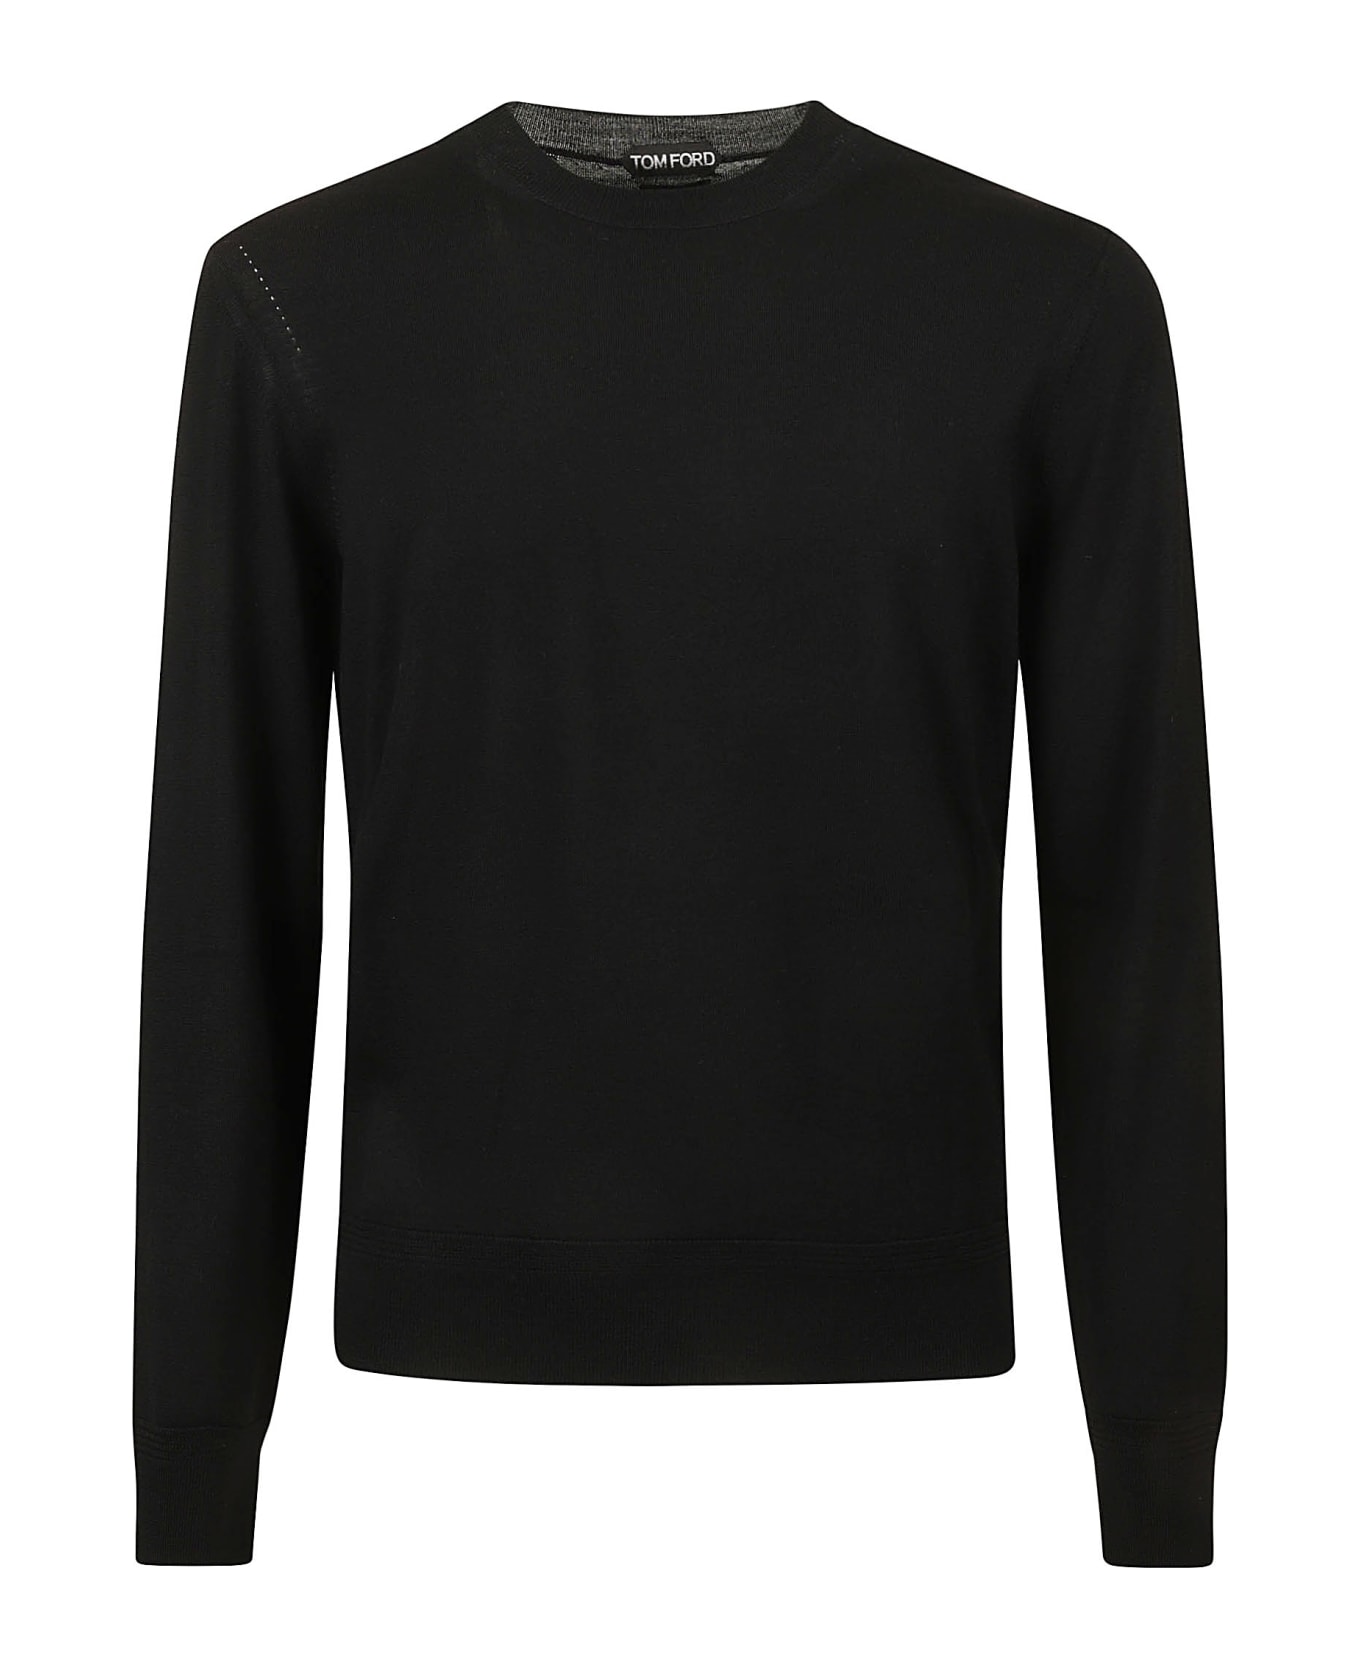 Tom Ford Plain Rib Sweatshirt - Black